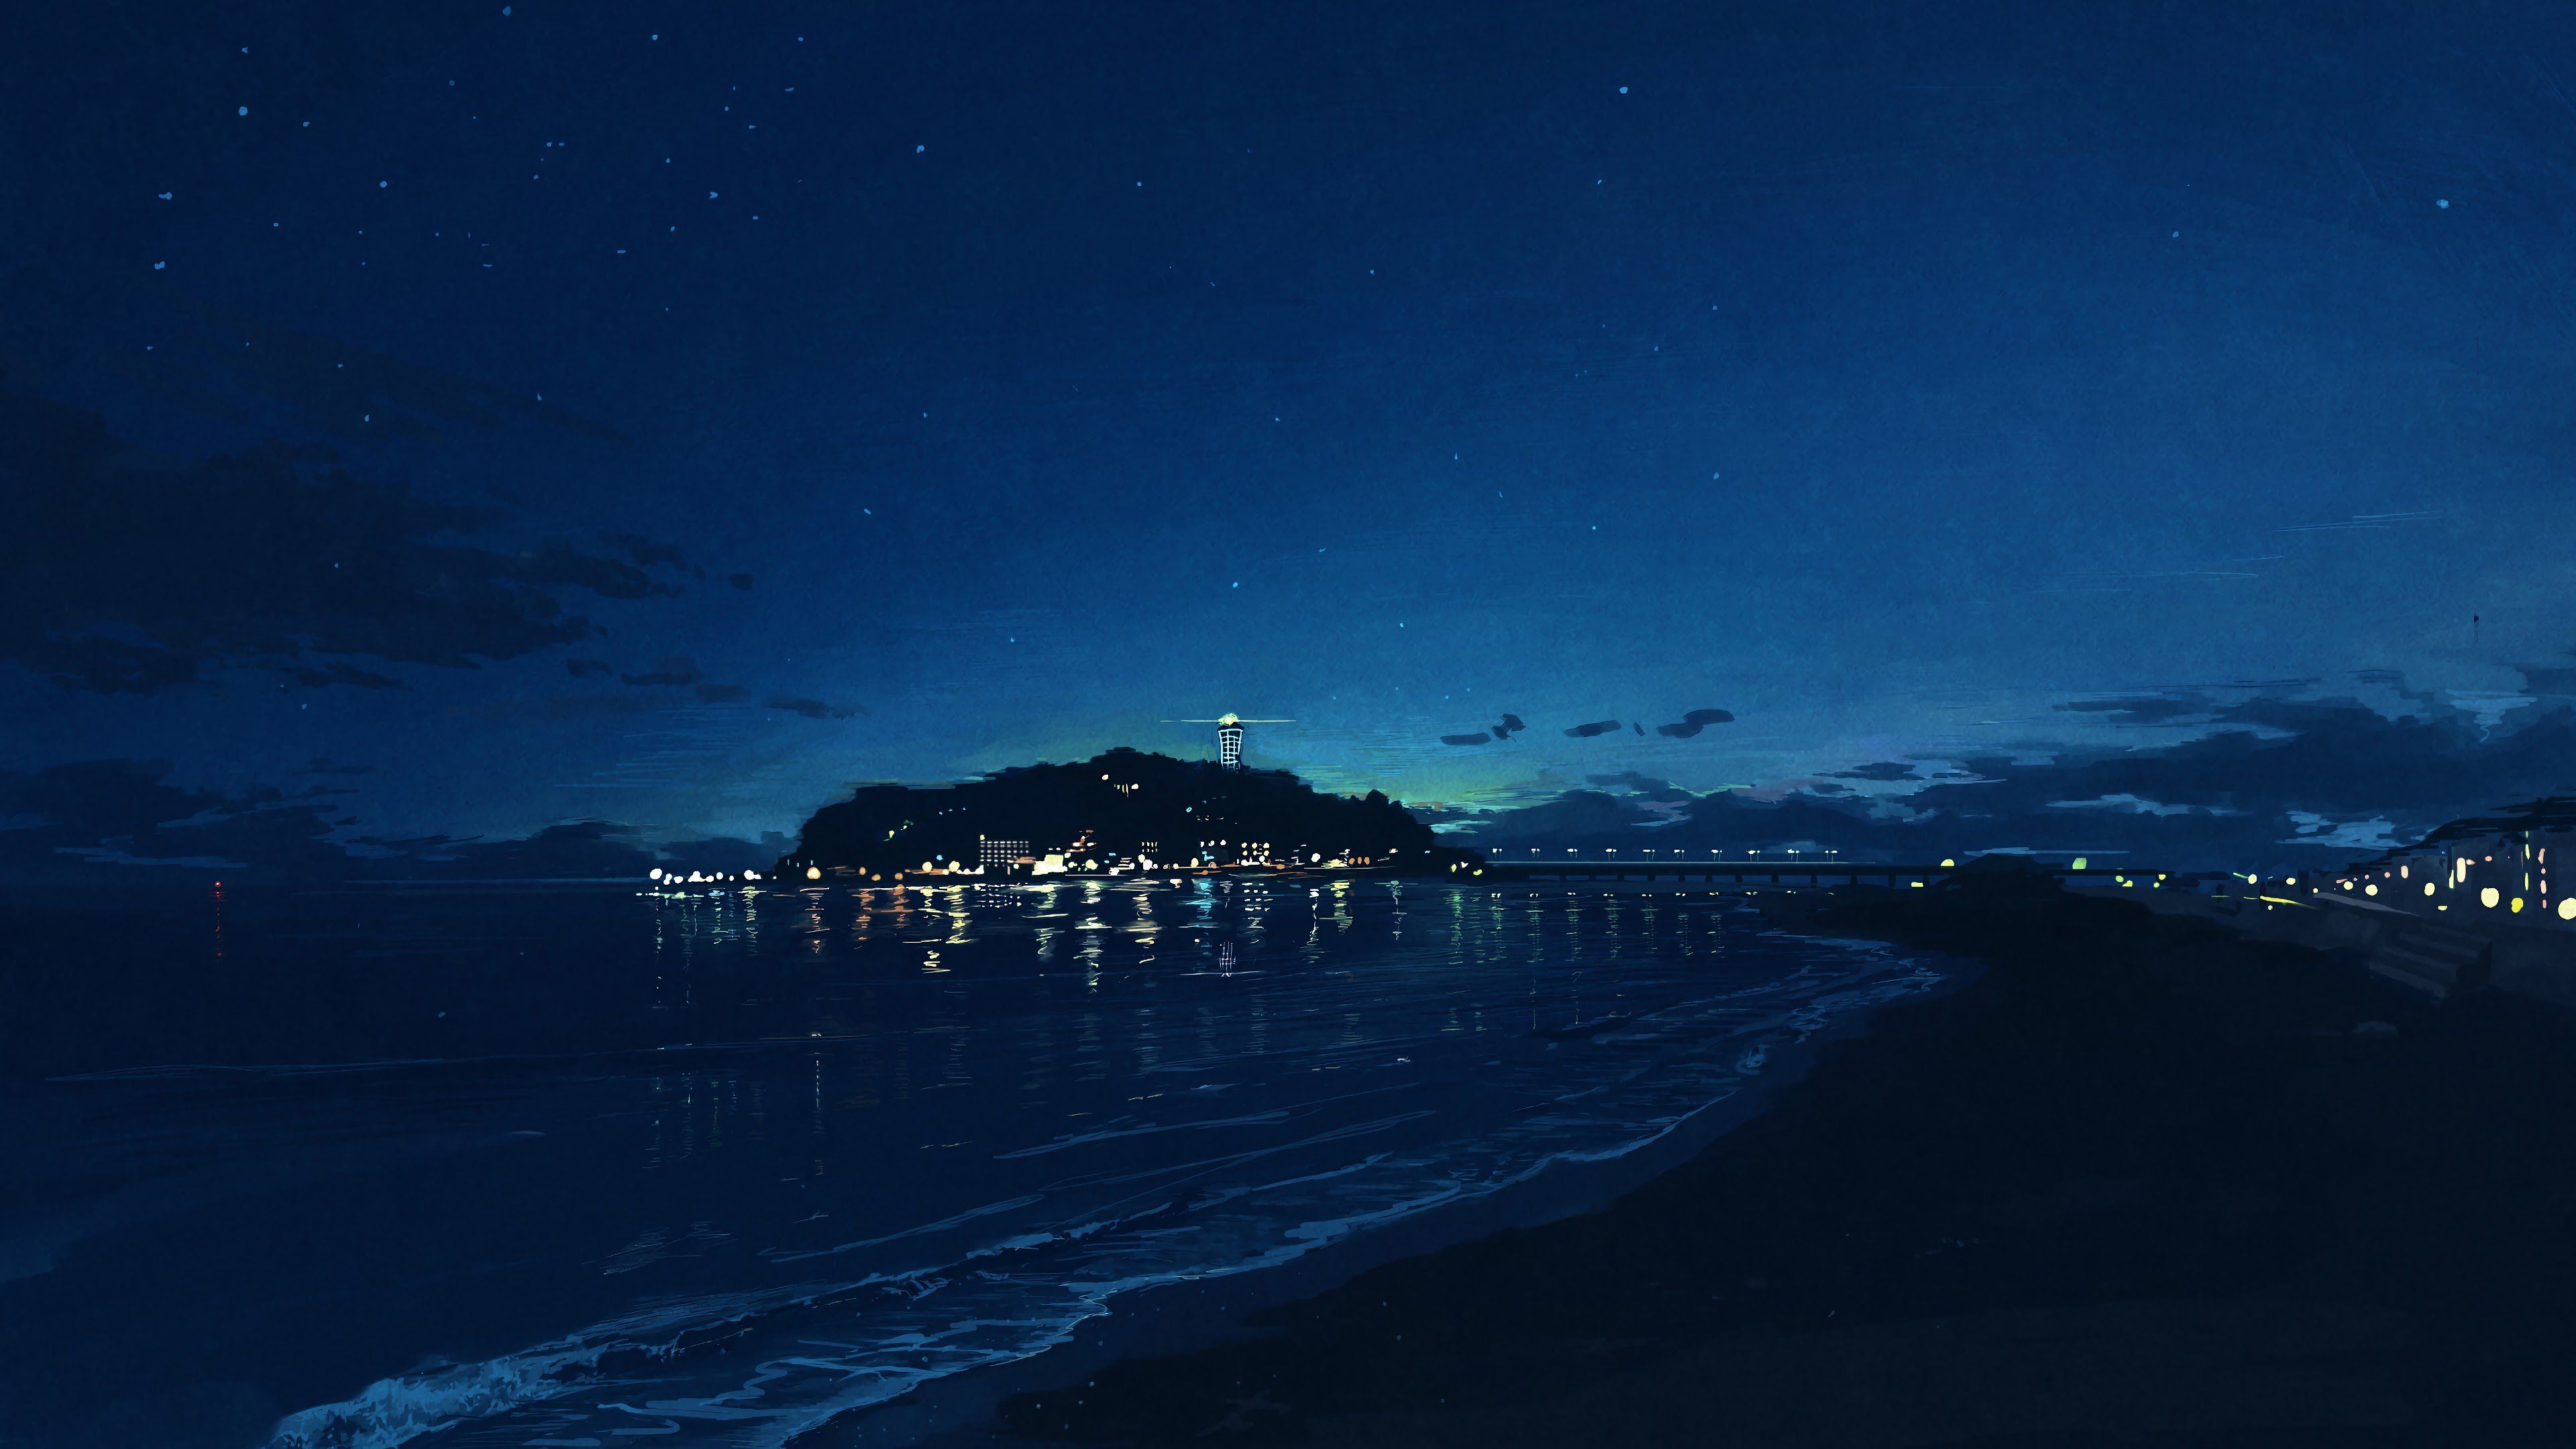 Đêm tràn ngập sao trên bầu trời, kết hợp với phong cảnh hoạt hình đầy màu sắc khiến cho bộ ảnh 4k Night Sky Anime Portrait Wallpapers trở nên vô cùng hoàn hảo. Bạn không thể bỏ qua những hình ảnh thiên nhiên tuyệt đẹp này!